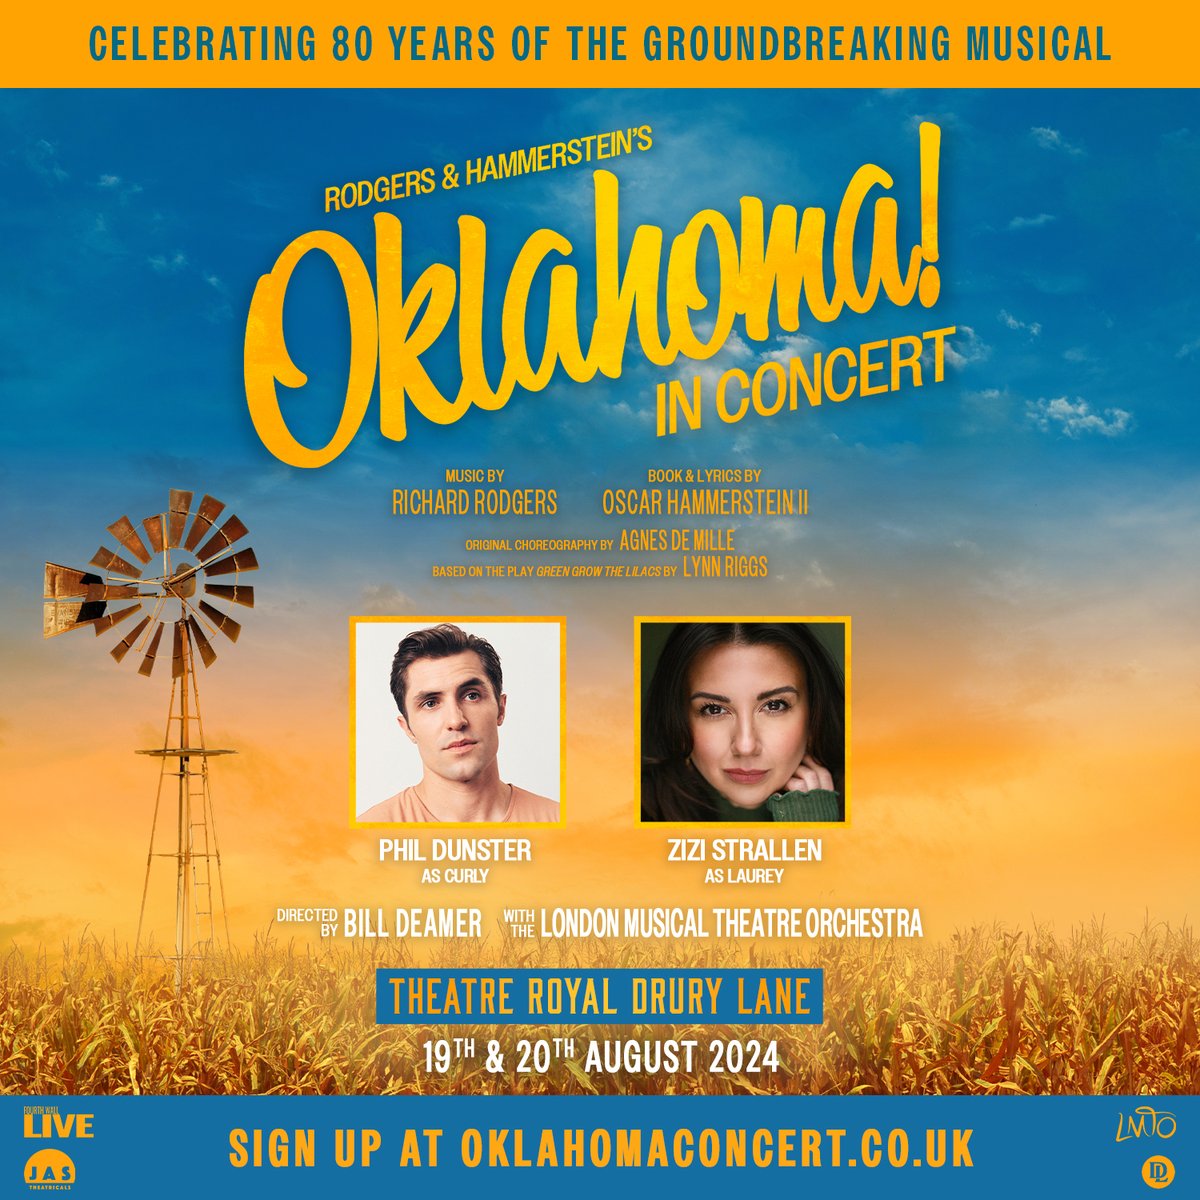 Phil Dunster (@phildunster) & Zizi Strallen (@ZiziStrallen) to lead 'RODGERS & HAMMERSTEIN’S OKLAHOMA! in Concert' at @TheatreRoyalDL! MORE INFO 👉 wp.me/p2HOoN-W4T #OklahomaConcert @LWTheatres